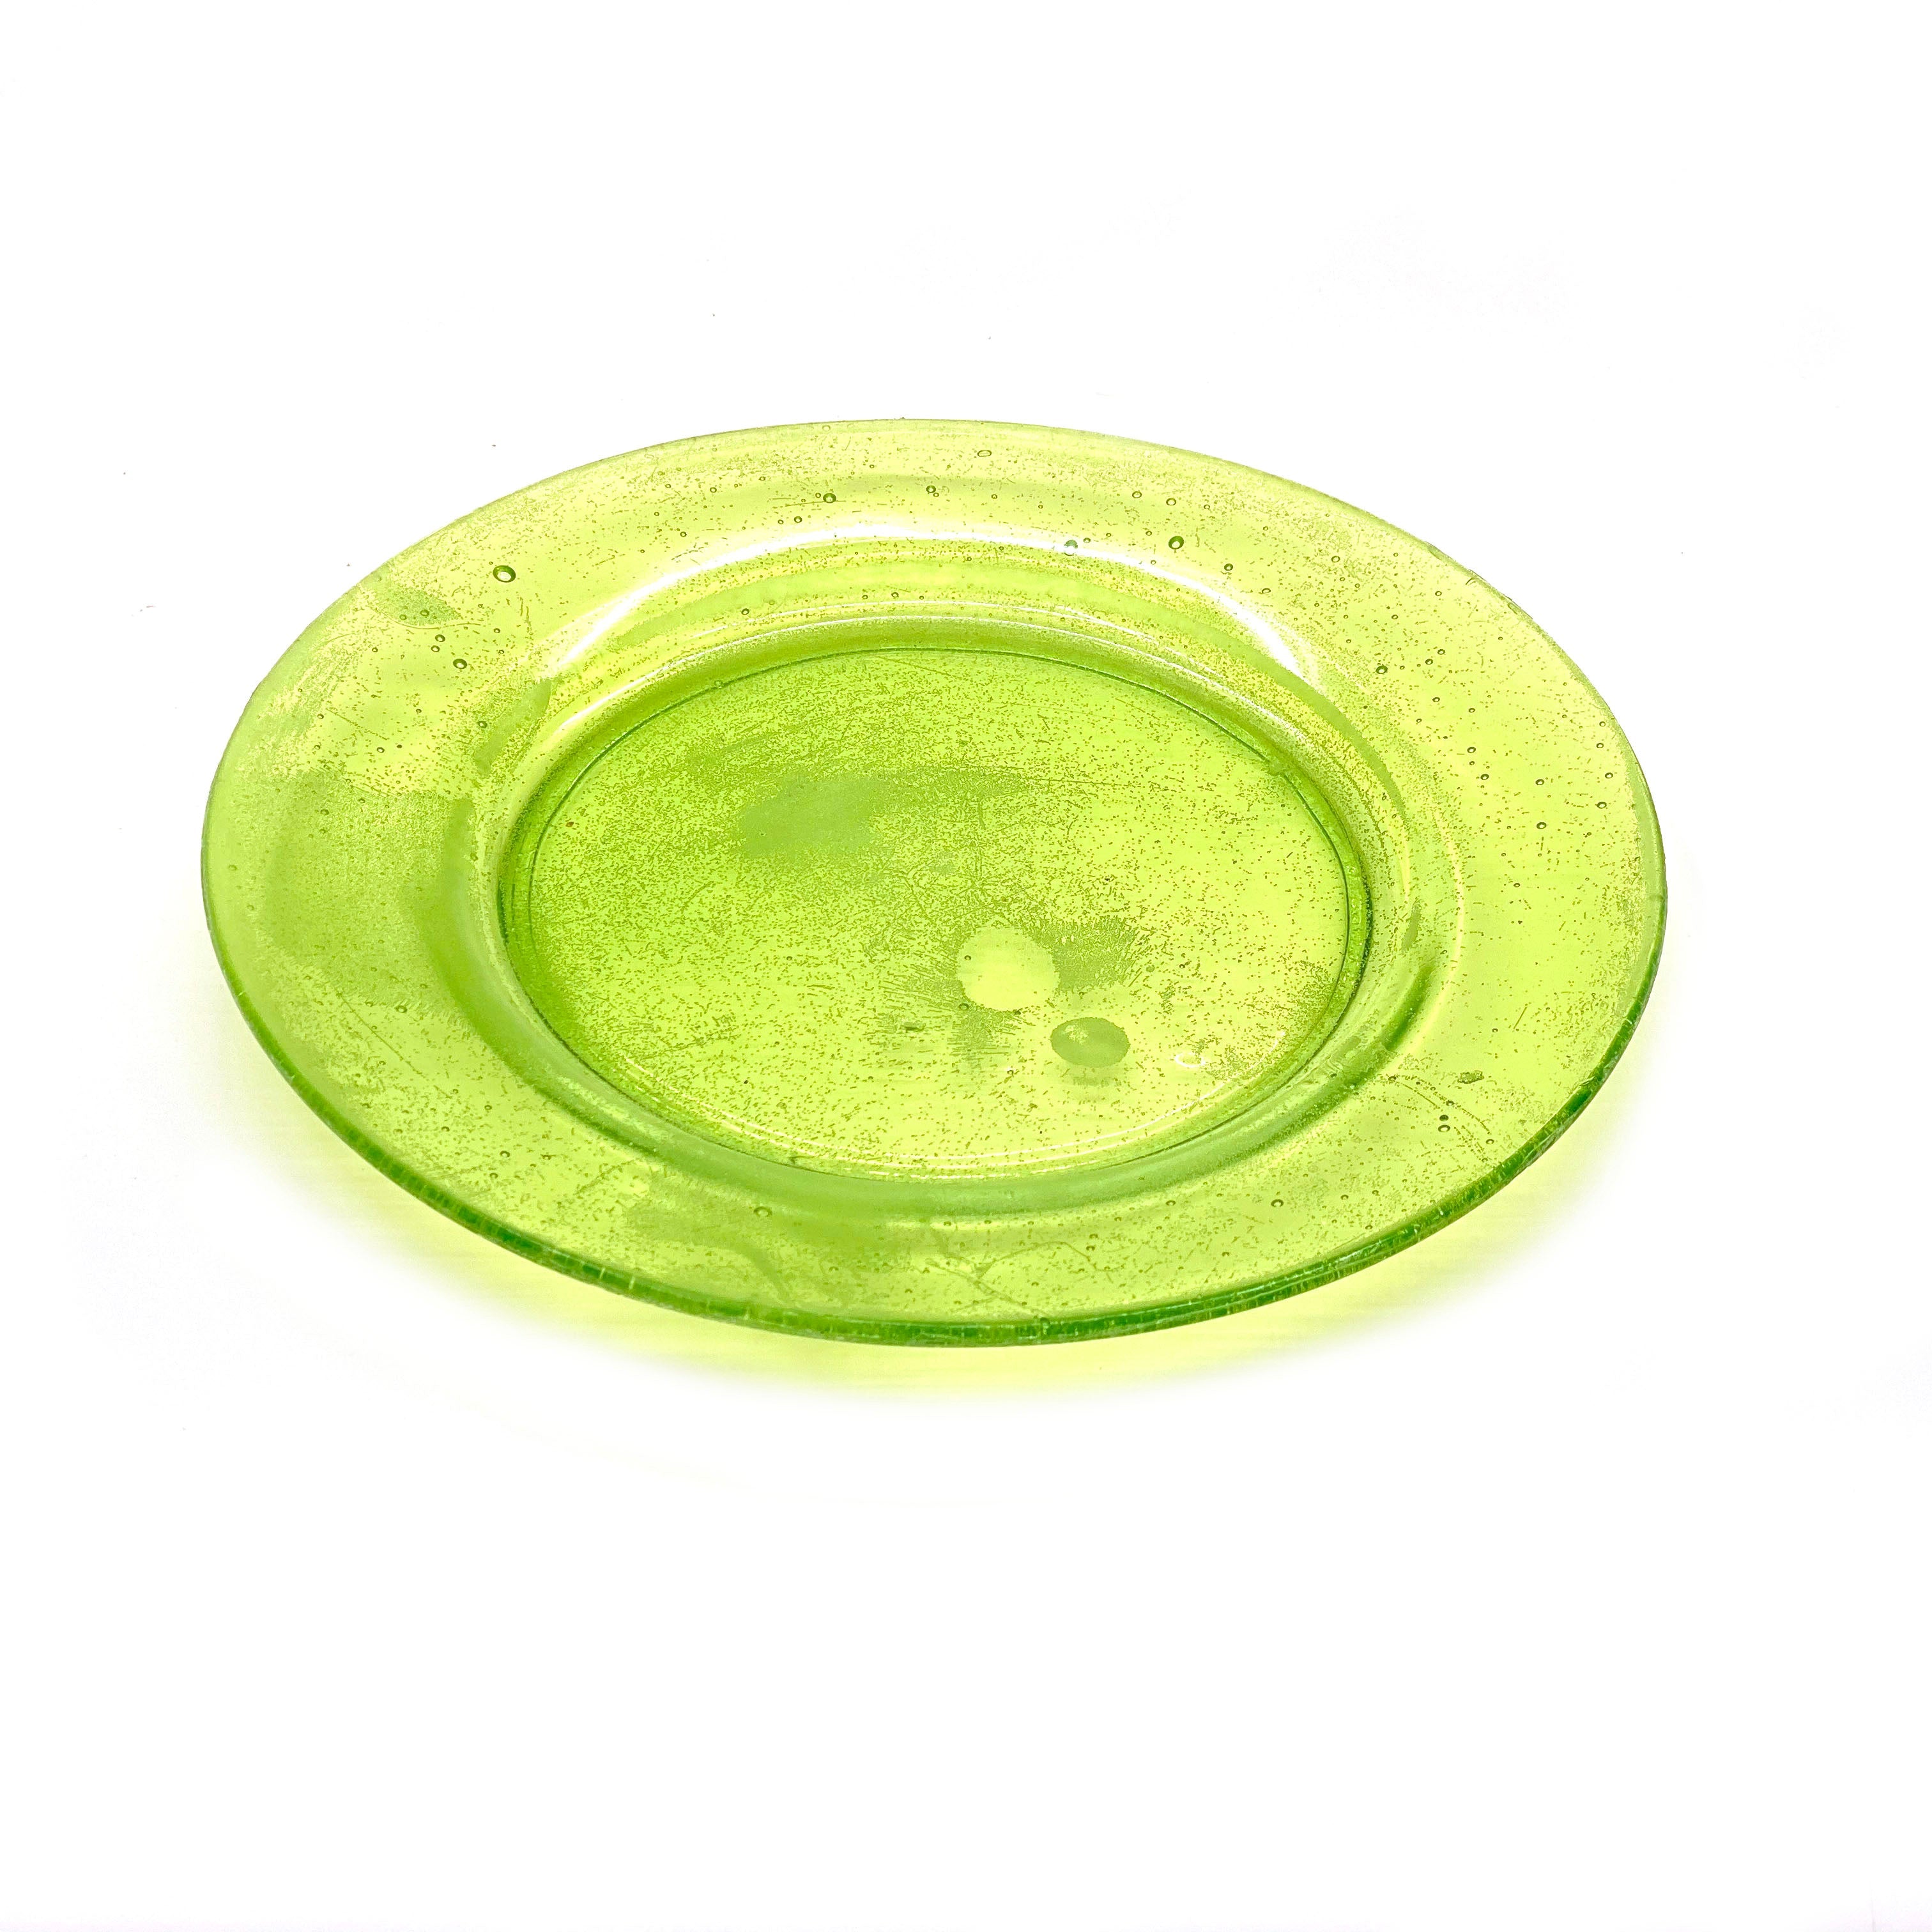 SMASHProps Breakaway Large Dinner Plate - LIGHT GREEN translucent - Light Green,Translucent